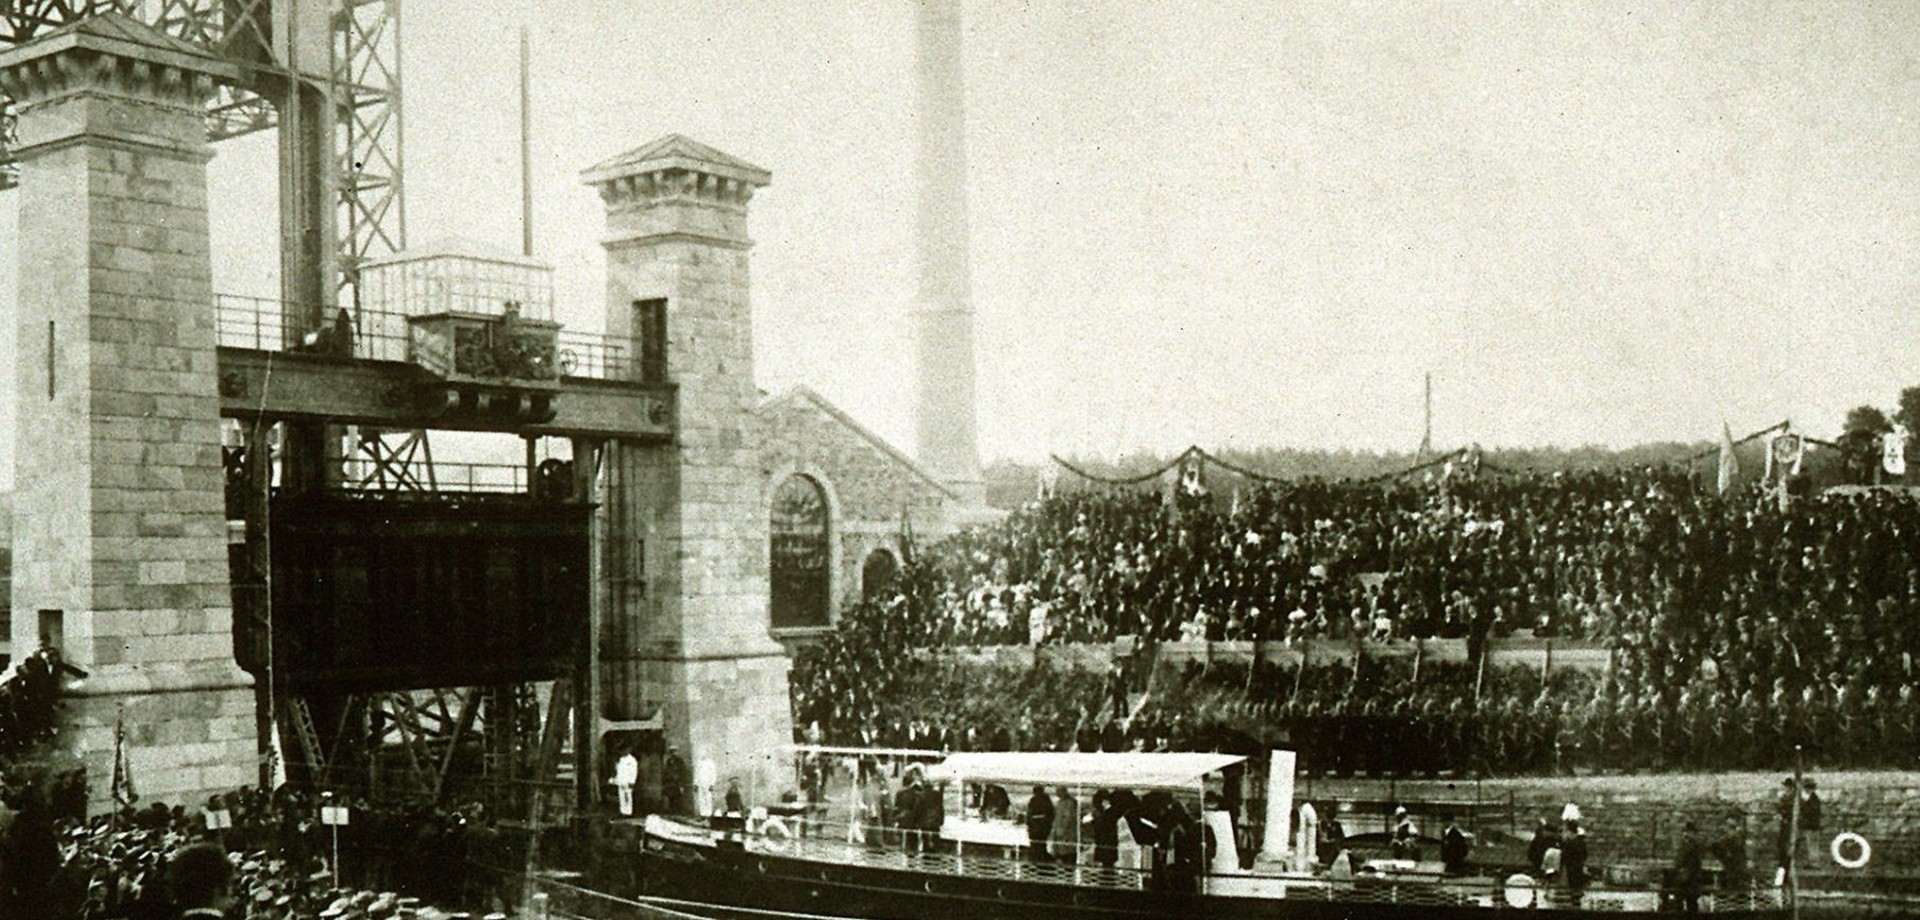 Schwarz-Weiß Aufnahme der Eröffnung des Schiffshebewerkes im Jahre 1899 mit hunderten Menschen am Ufer des Kanals.